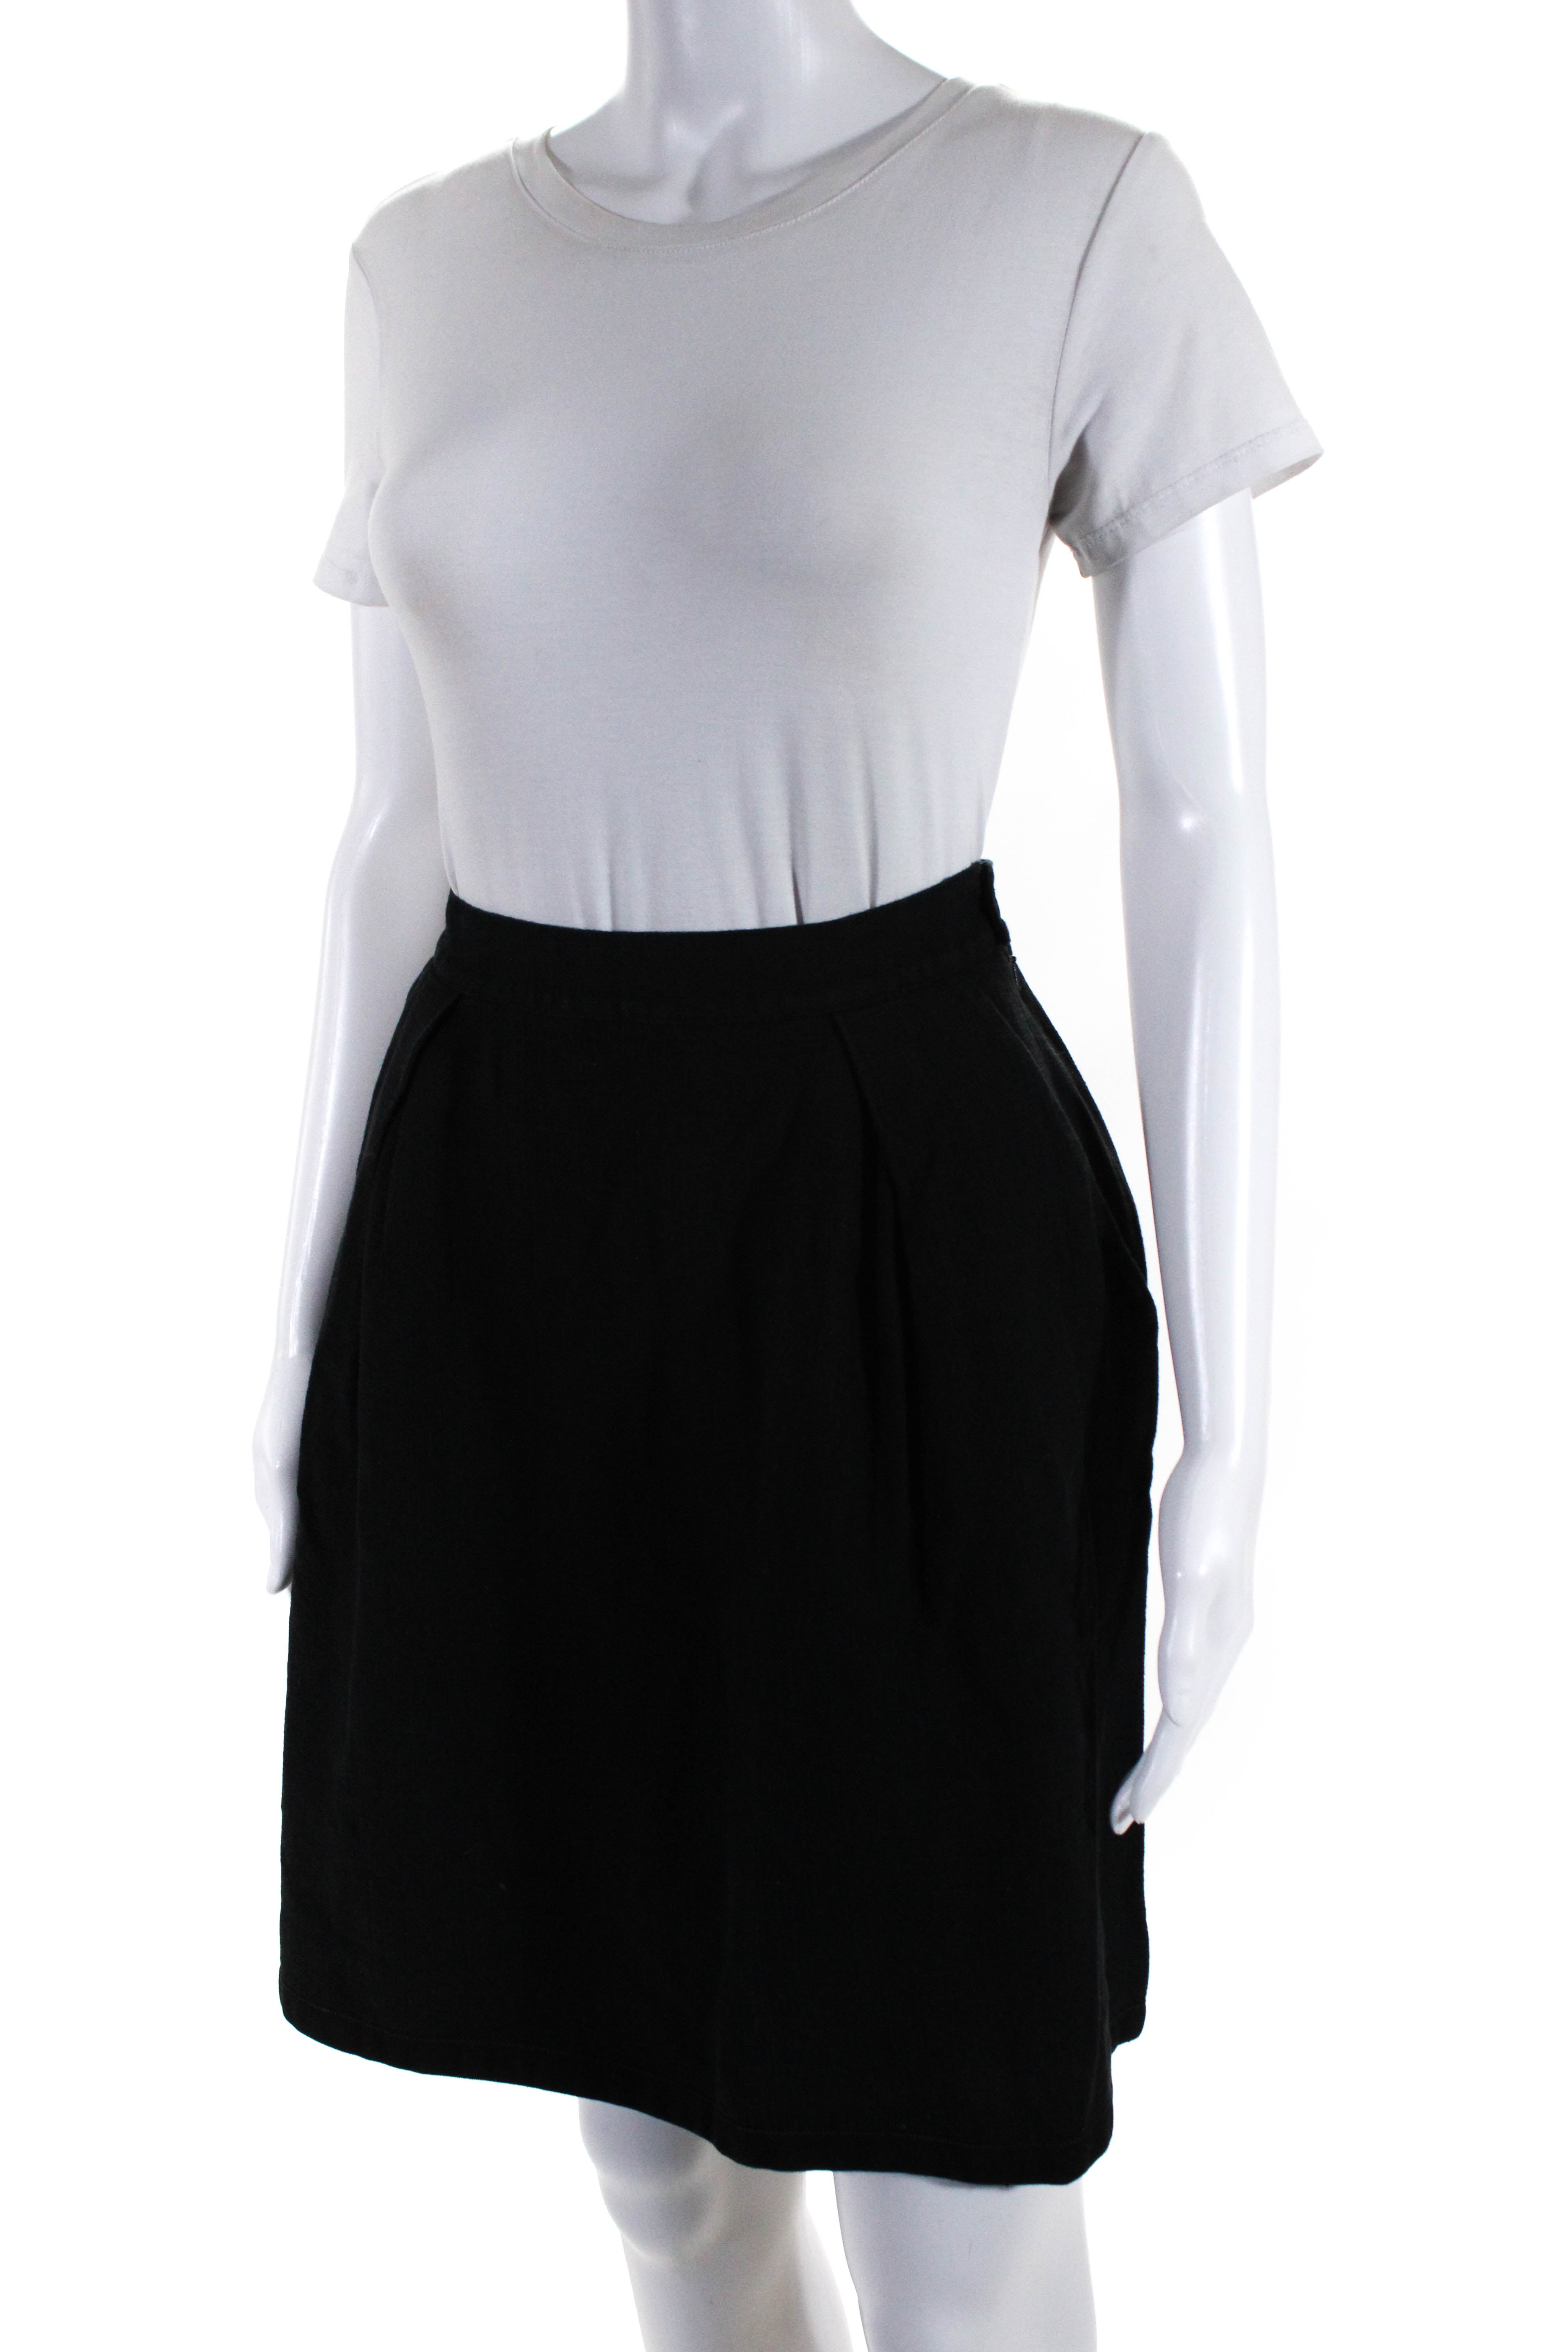 La Perla Womens Pleated Front Skirt Black Cotton Blend Size EUR 44